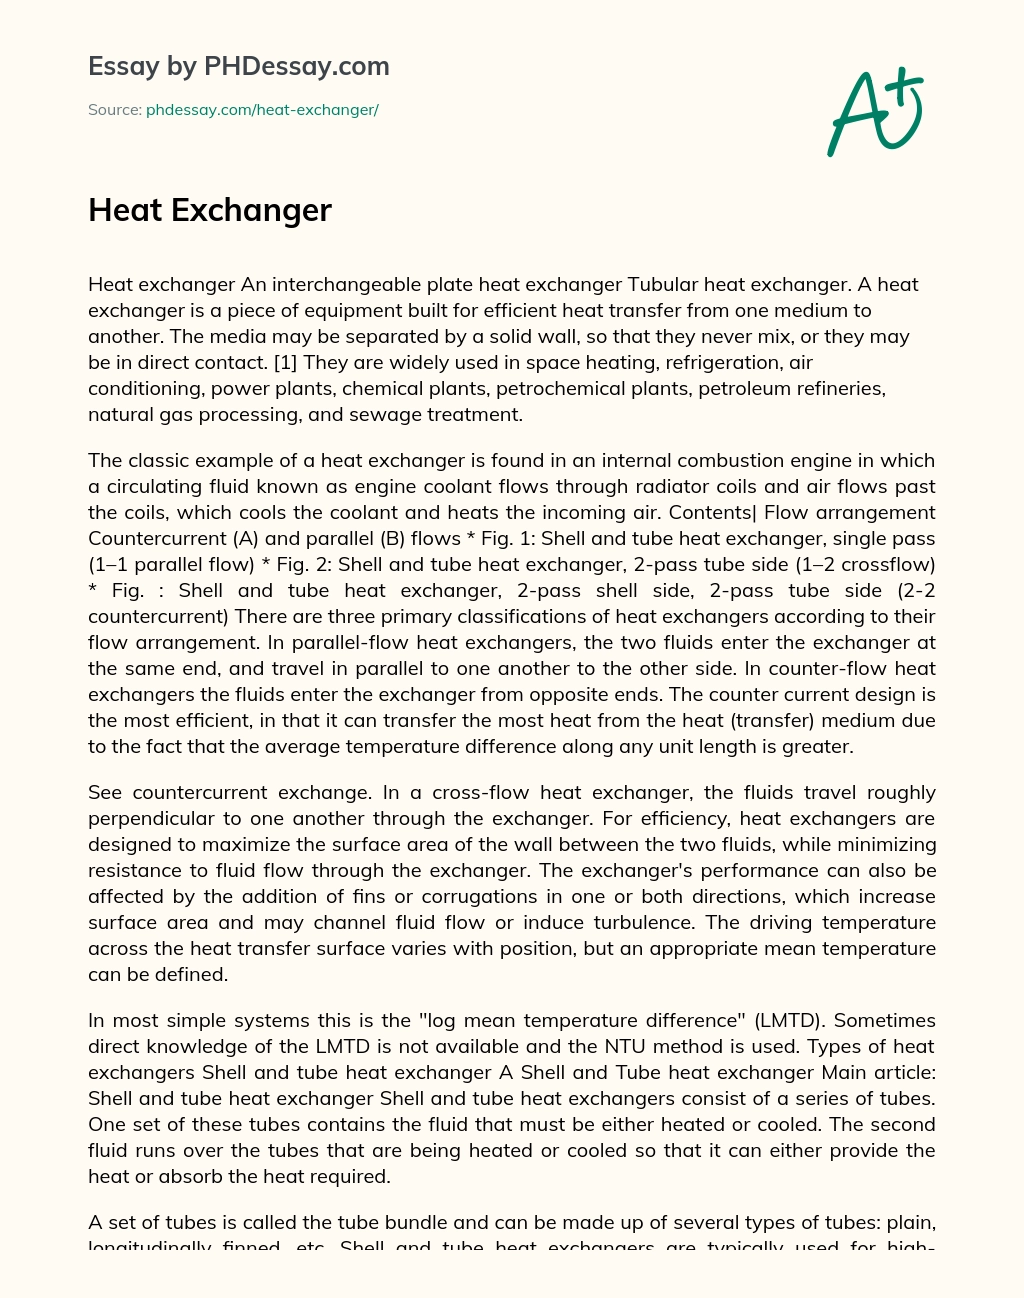 Heat Exchanger essay